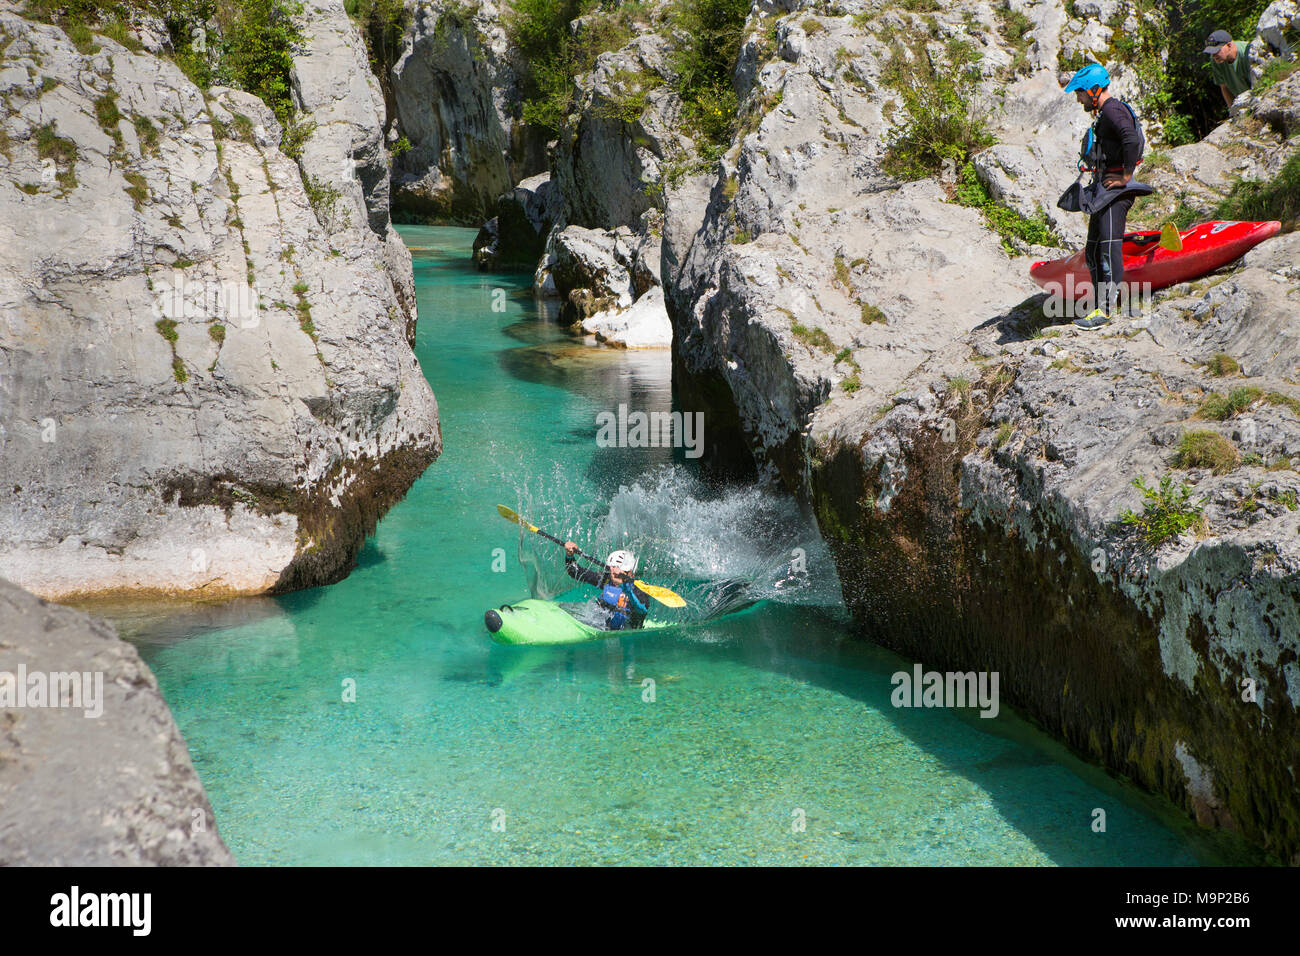 Un homme dans un kayak est de sauter dans l'eau, tandis qu'un autre homme regarde. L'émeraude Soca près de Bovec en Slovénie, originaires de la Triglav, est célèbre pour tous les types d'activités d'eau vive. Banque D'Images